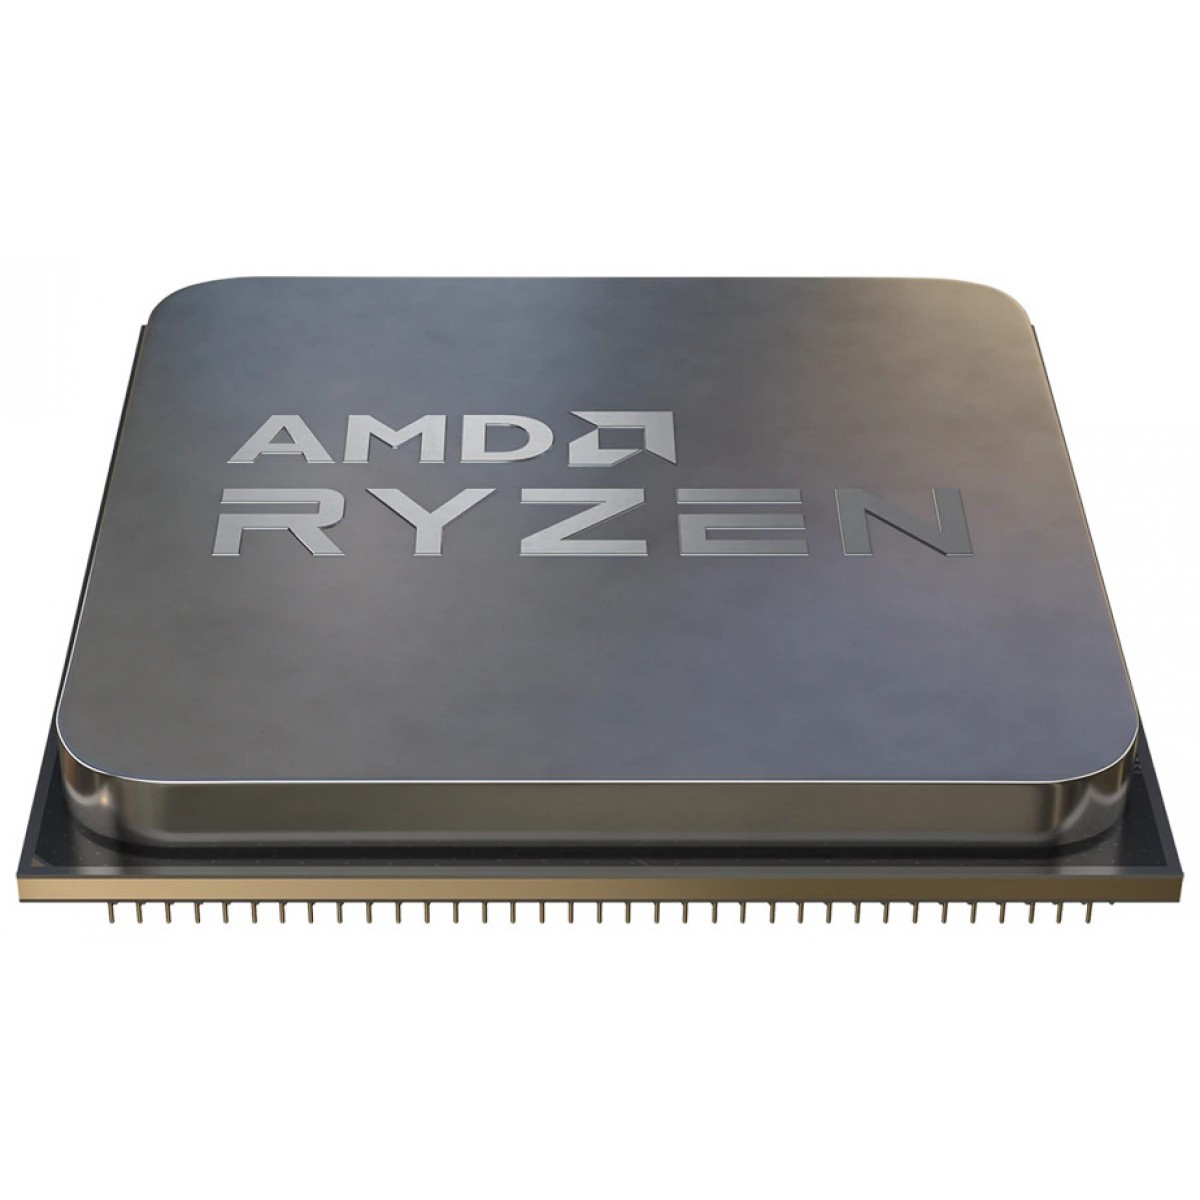 Processador AMD Ryzen 7 5700X 3.4GHz (4.6GHz Turbo), 8-Cores 16-Threads, AM4, Sem Cooler, 100-100000926WOF